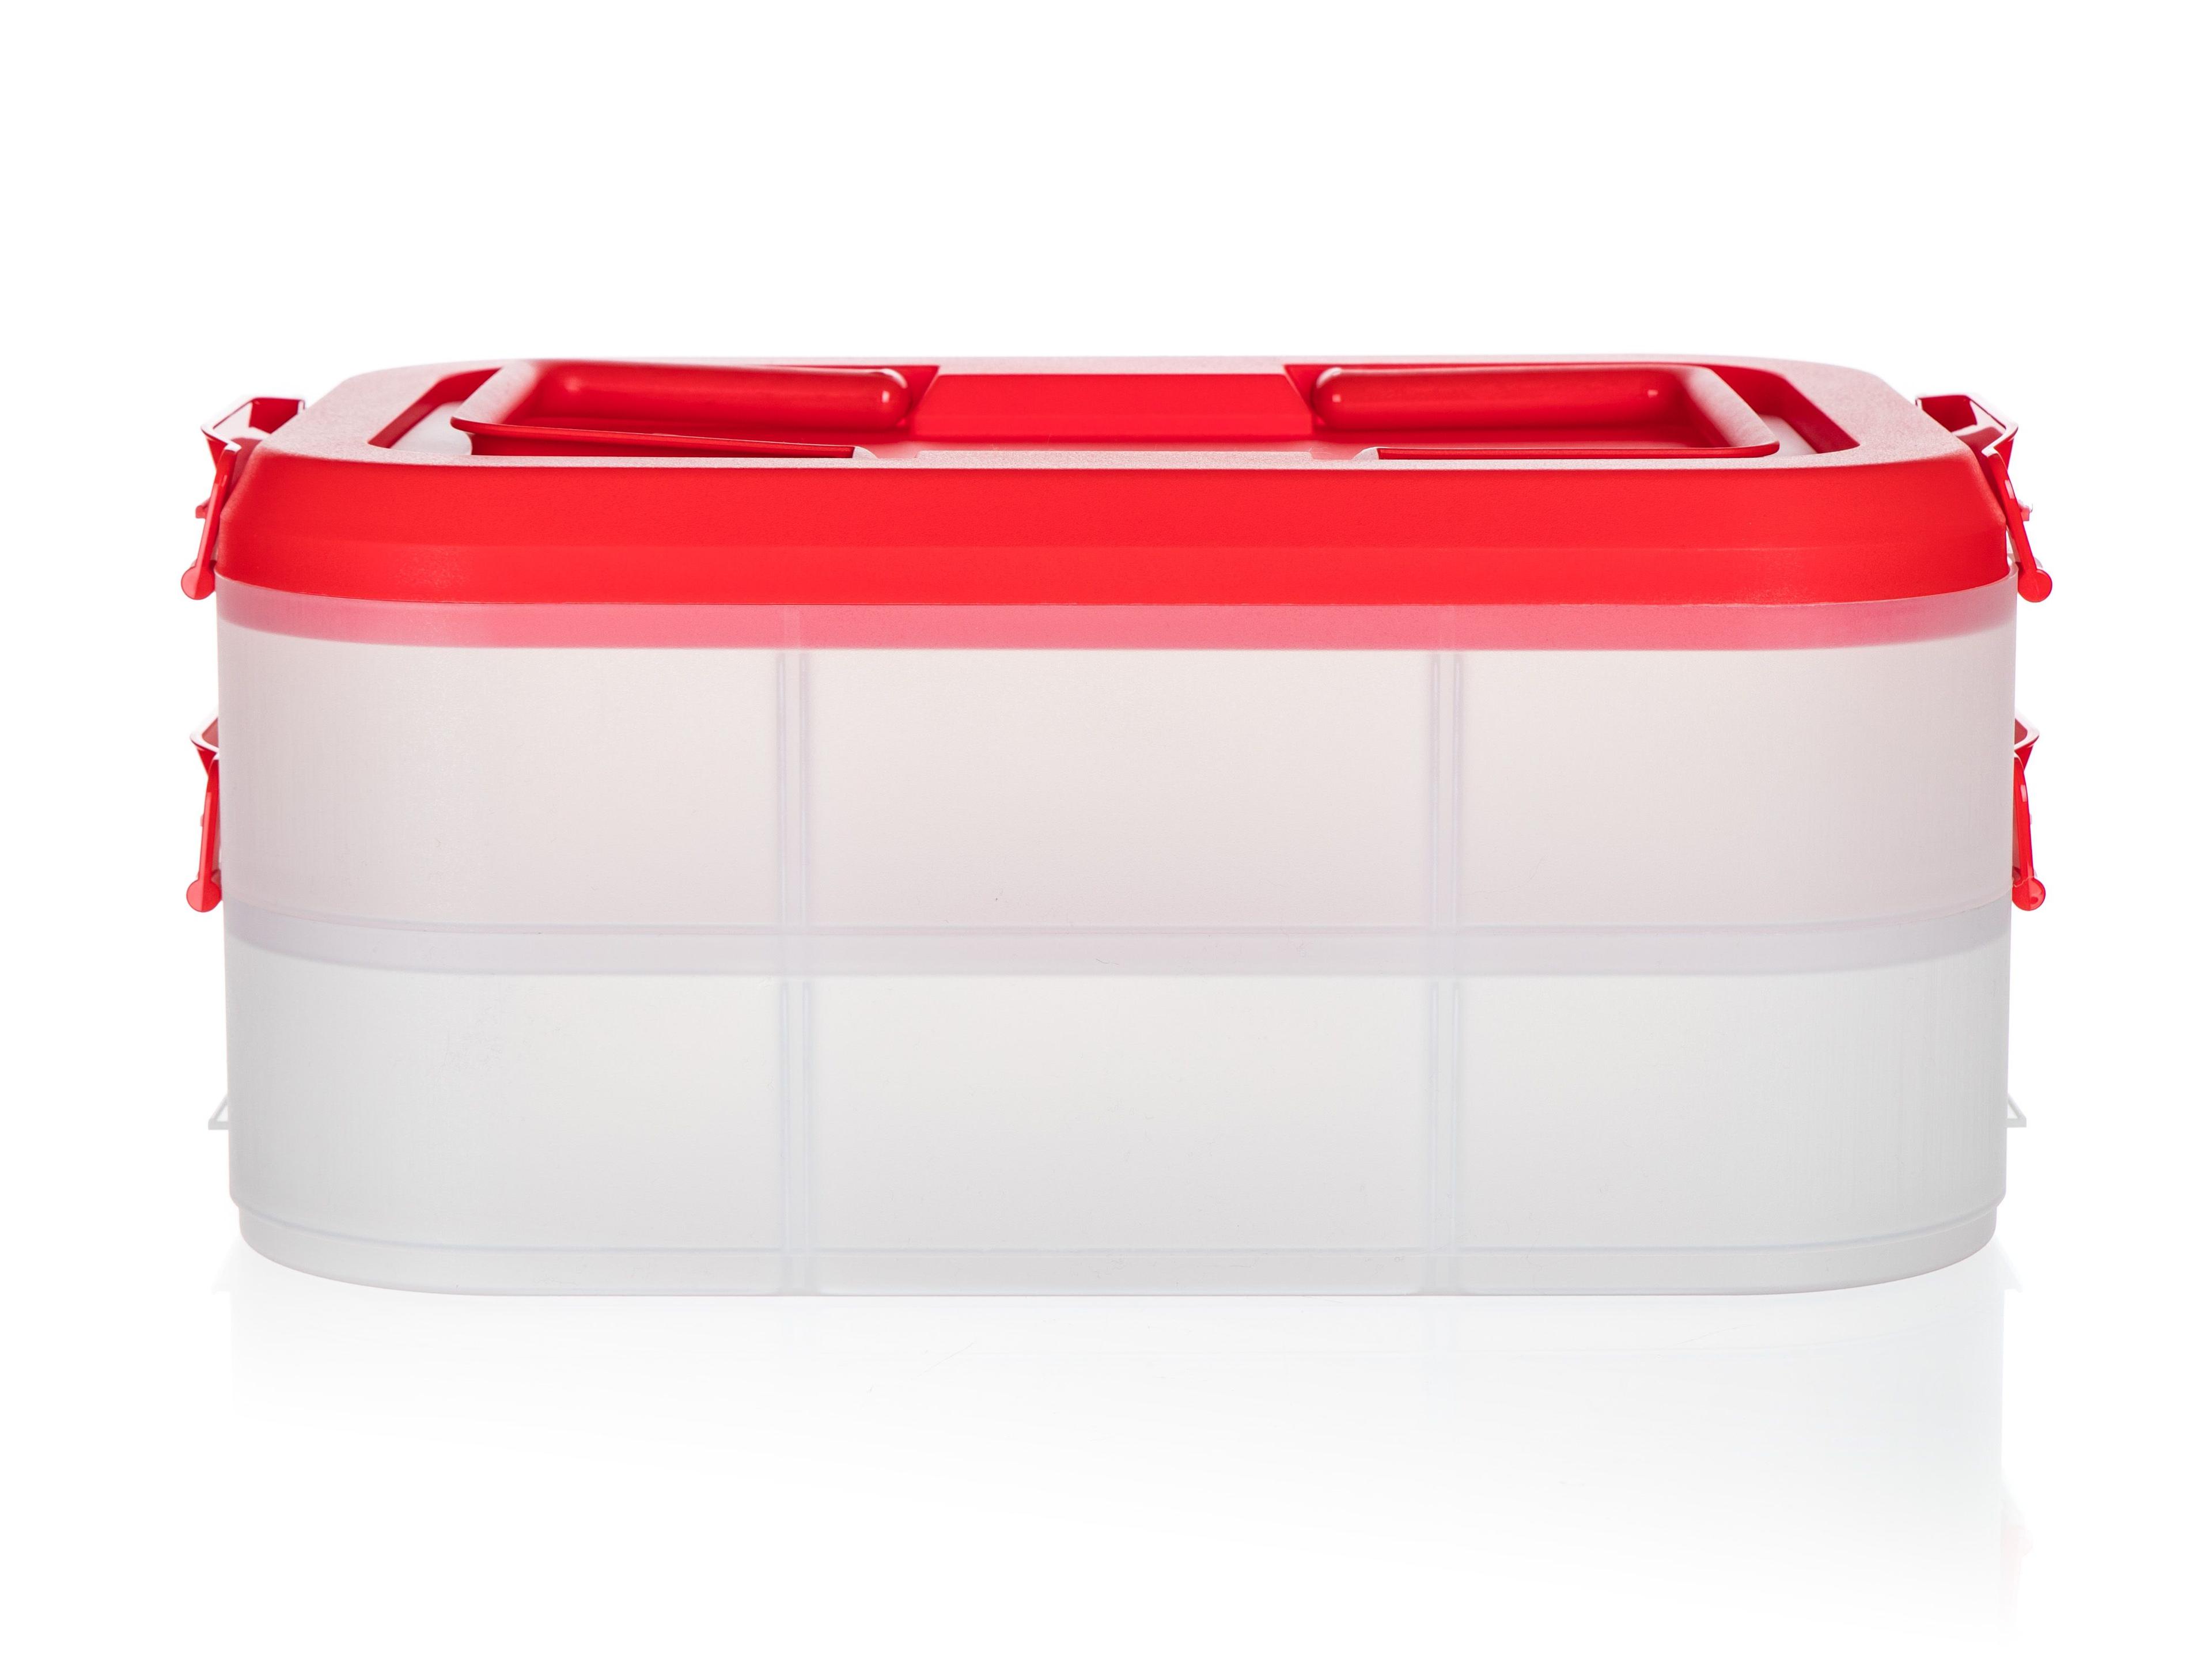 Party box pojemnik na ciasto CULINARIA 40 x 28 x 17,8 cm, czerwona pokrywa